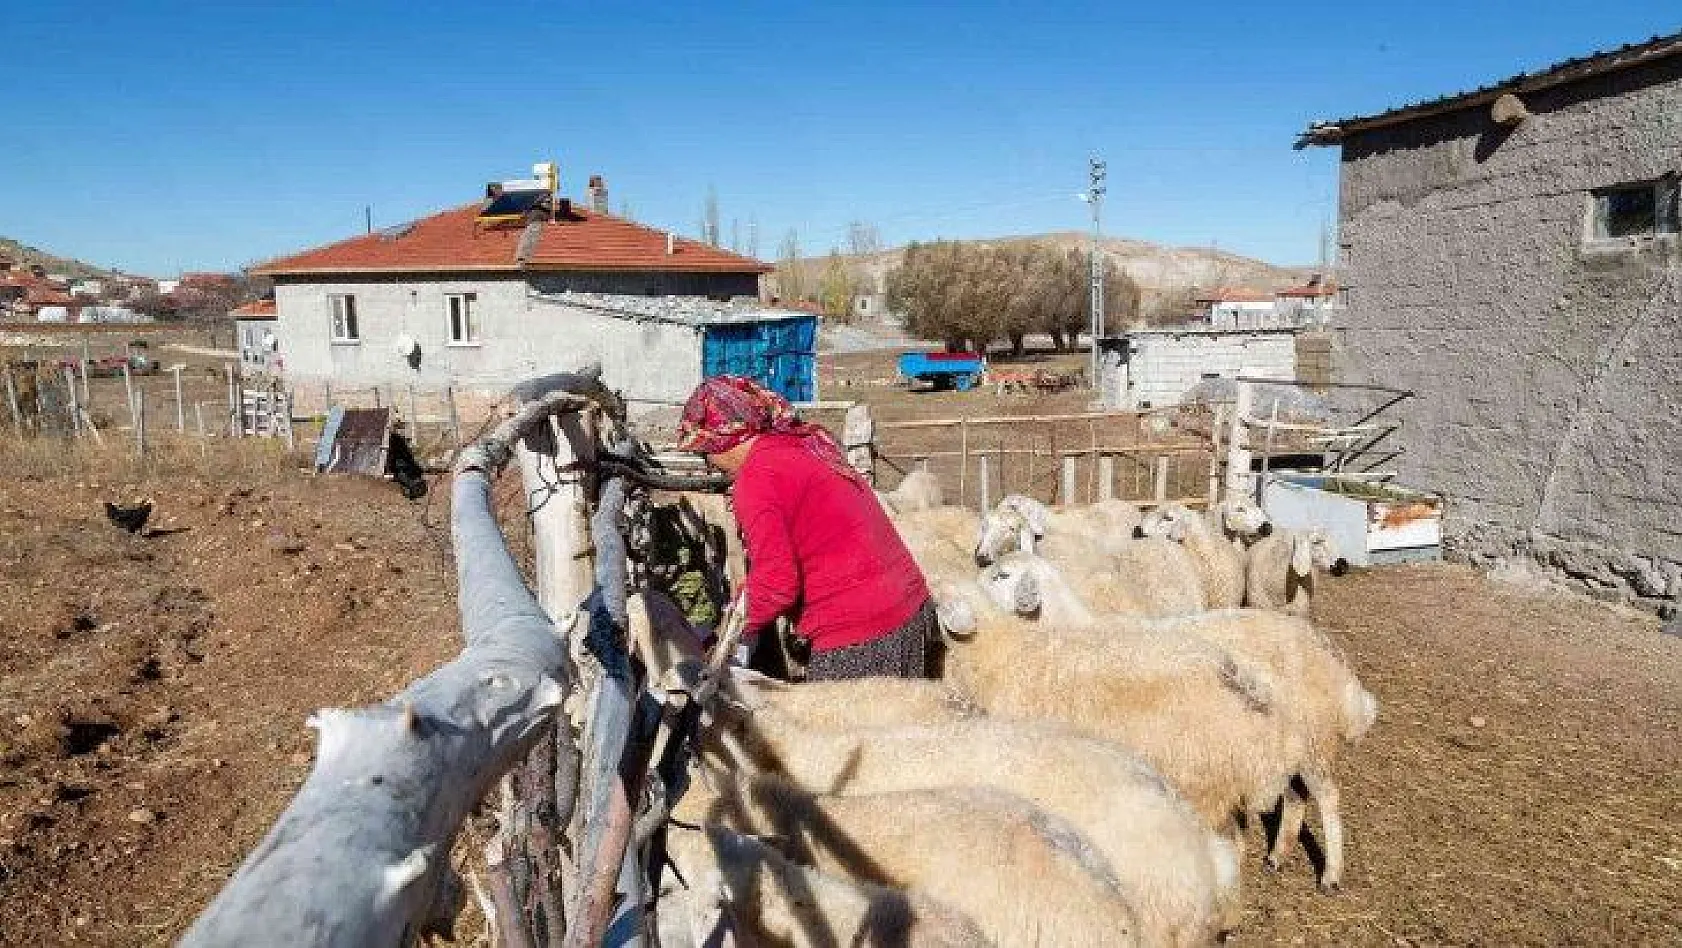 Büyükşehir Belediyesi: Büyükkılıç'ın projesi ile koyun sayısı arttı!